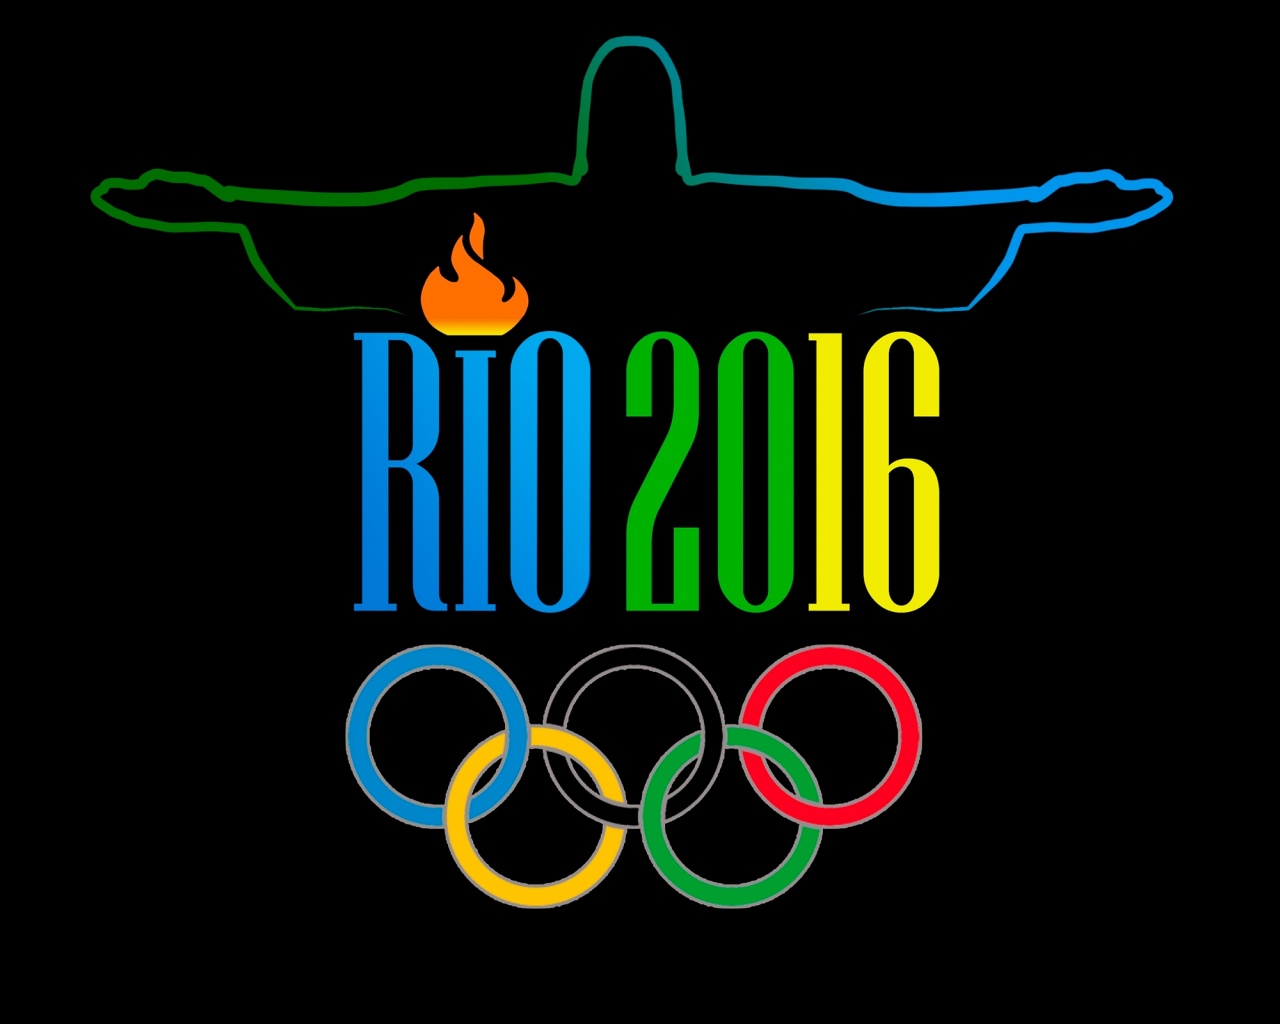 2016 Summer Olympics Rio De Janeiro